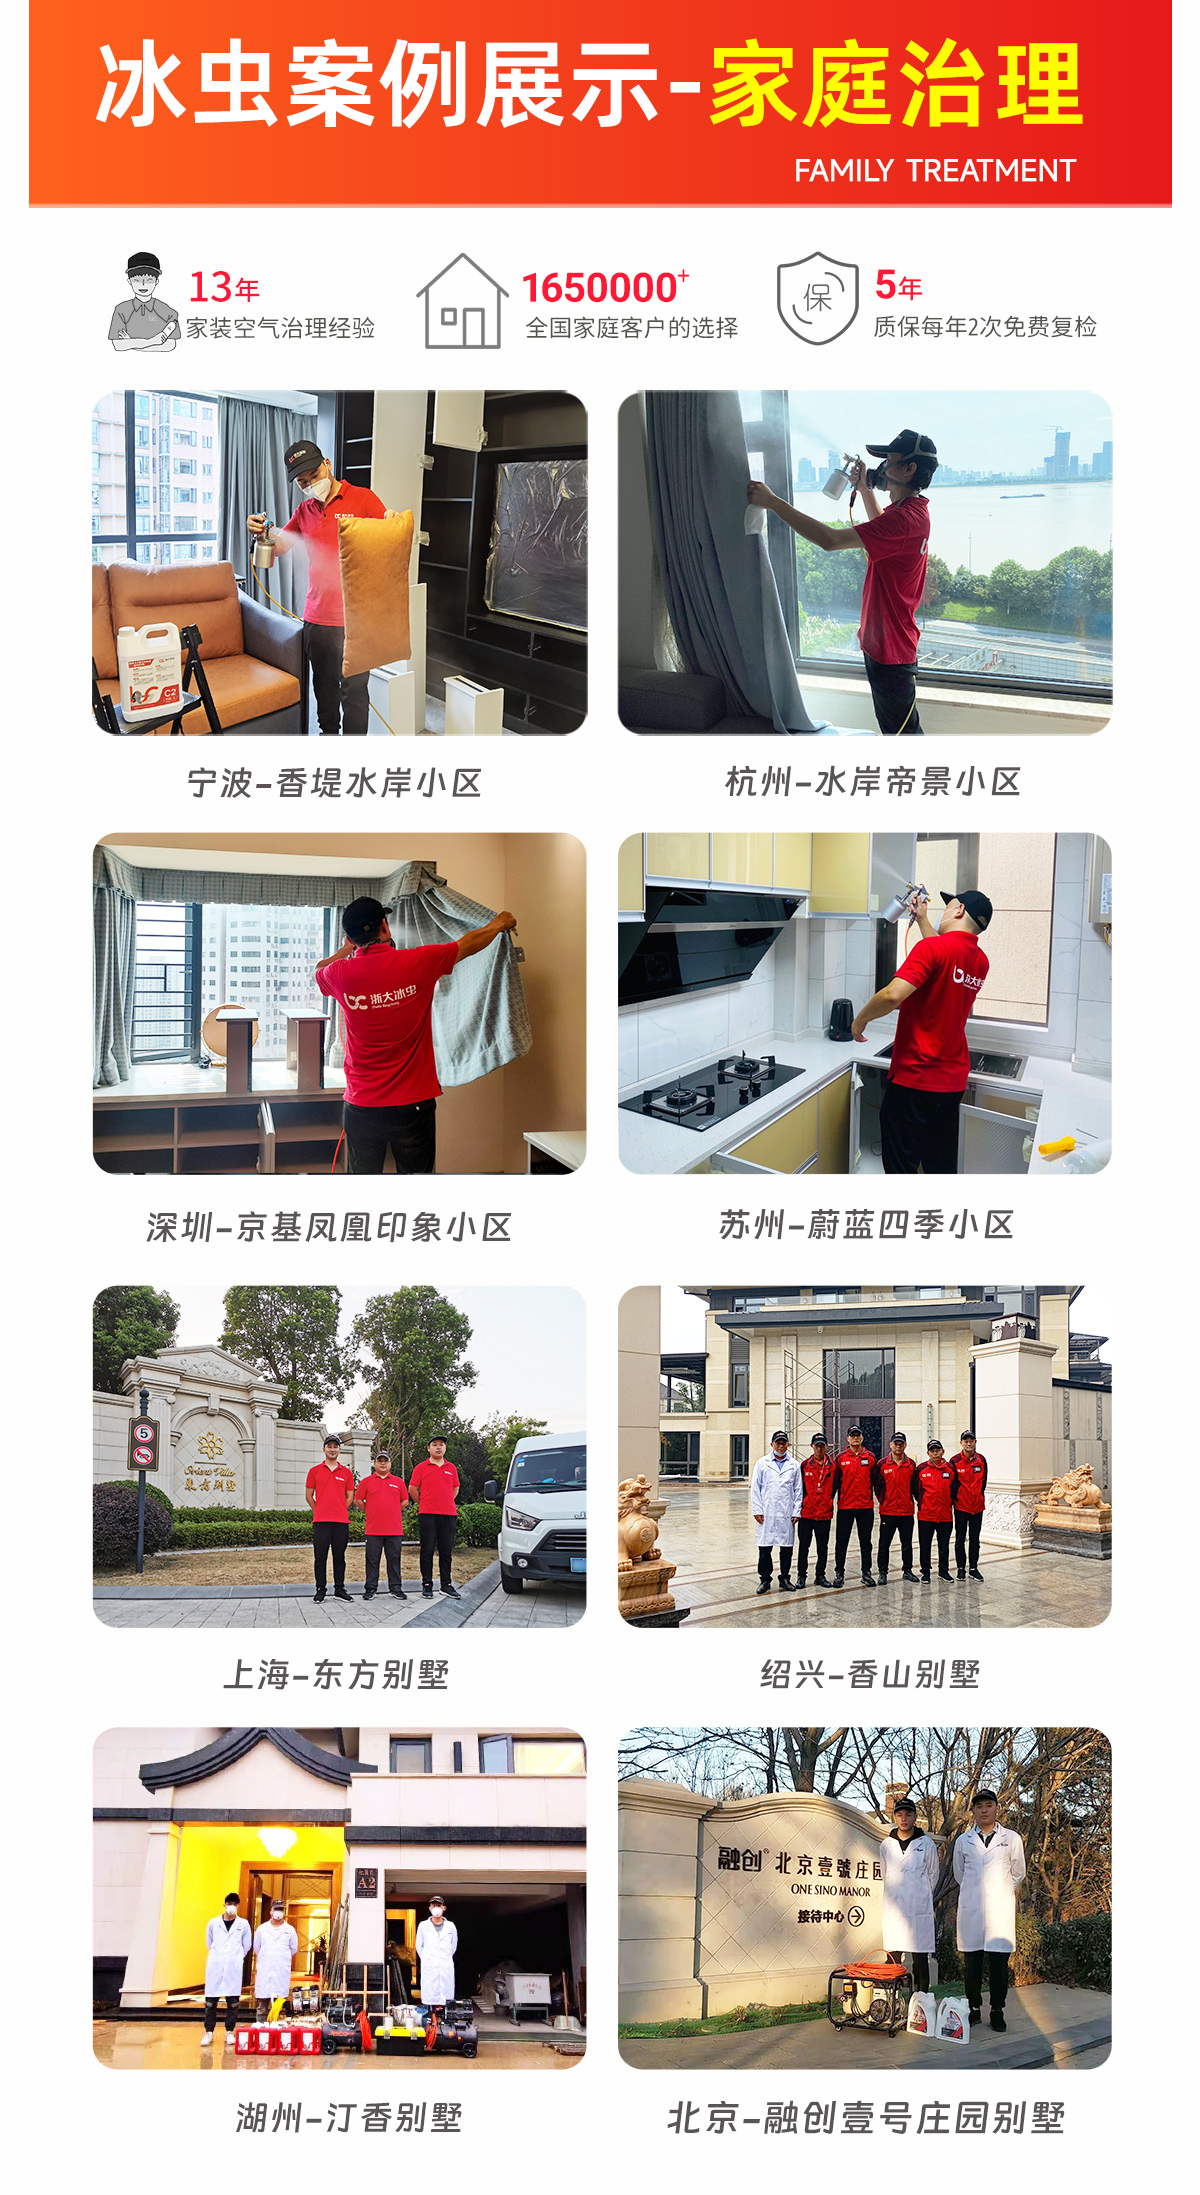 上海除甲醛公司-上海除甲醛-冰虫家庭除甲醛案例